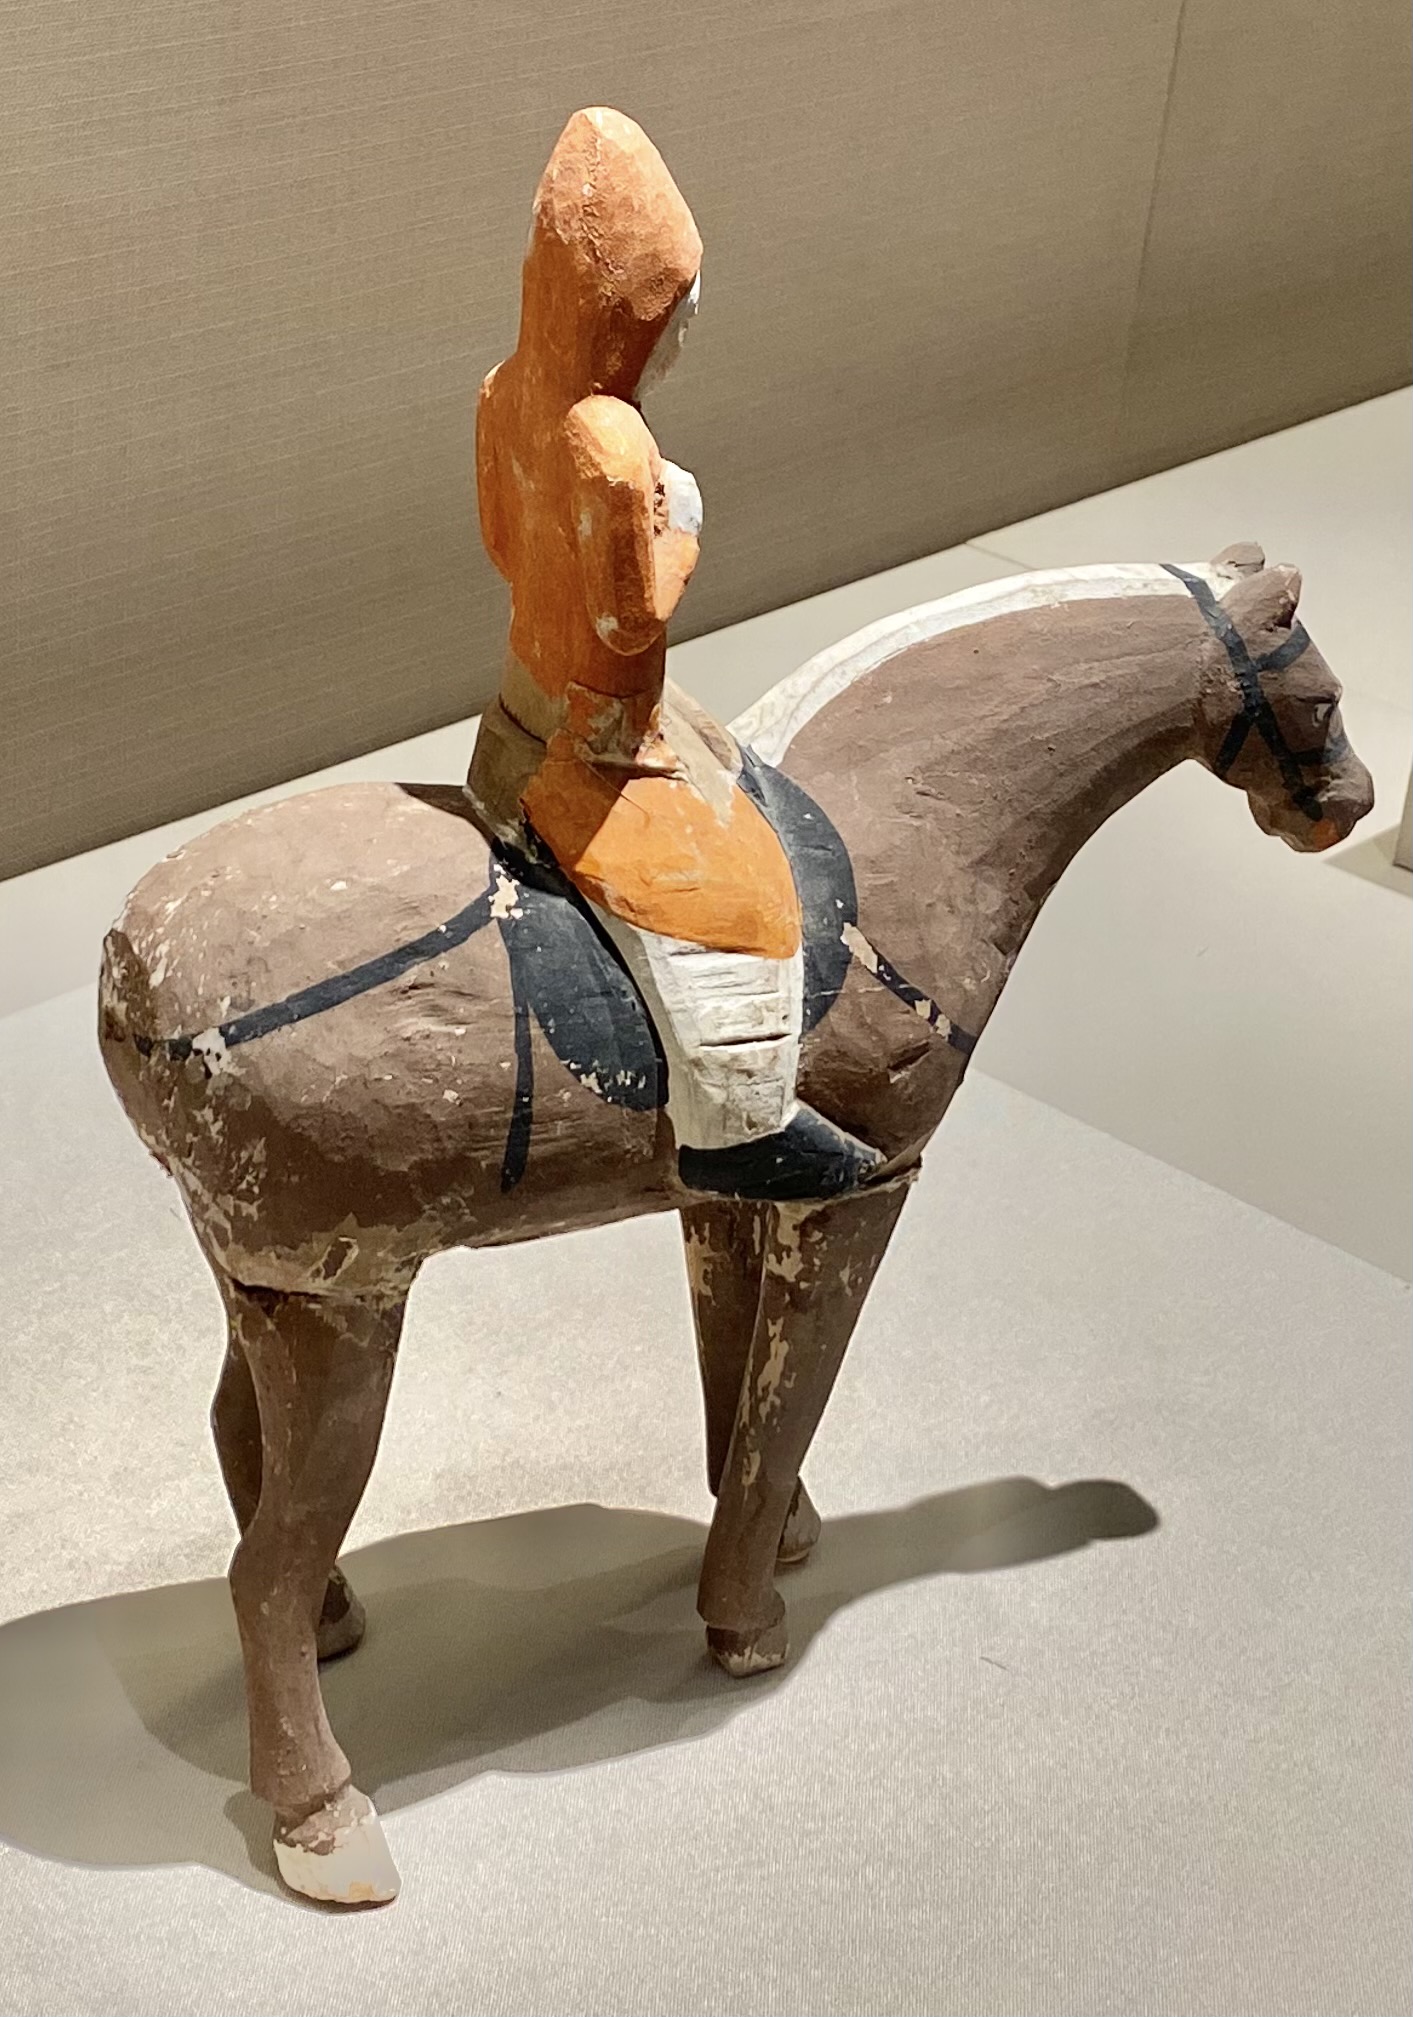 彩絵木彫騎馬武士俑-唐時代-巡回特別展【天歌長歌-唐蕃古道】-四川博物館